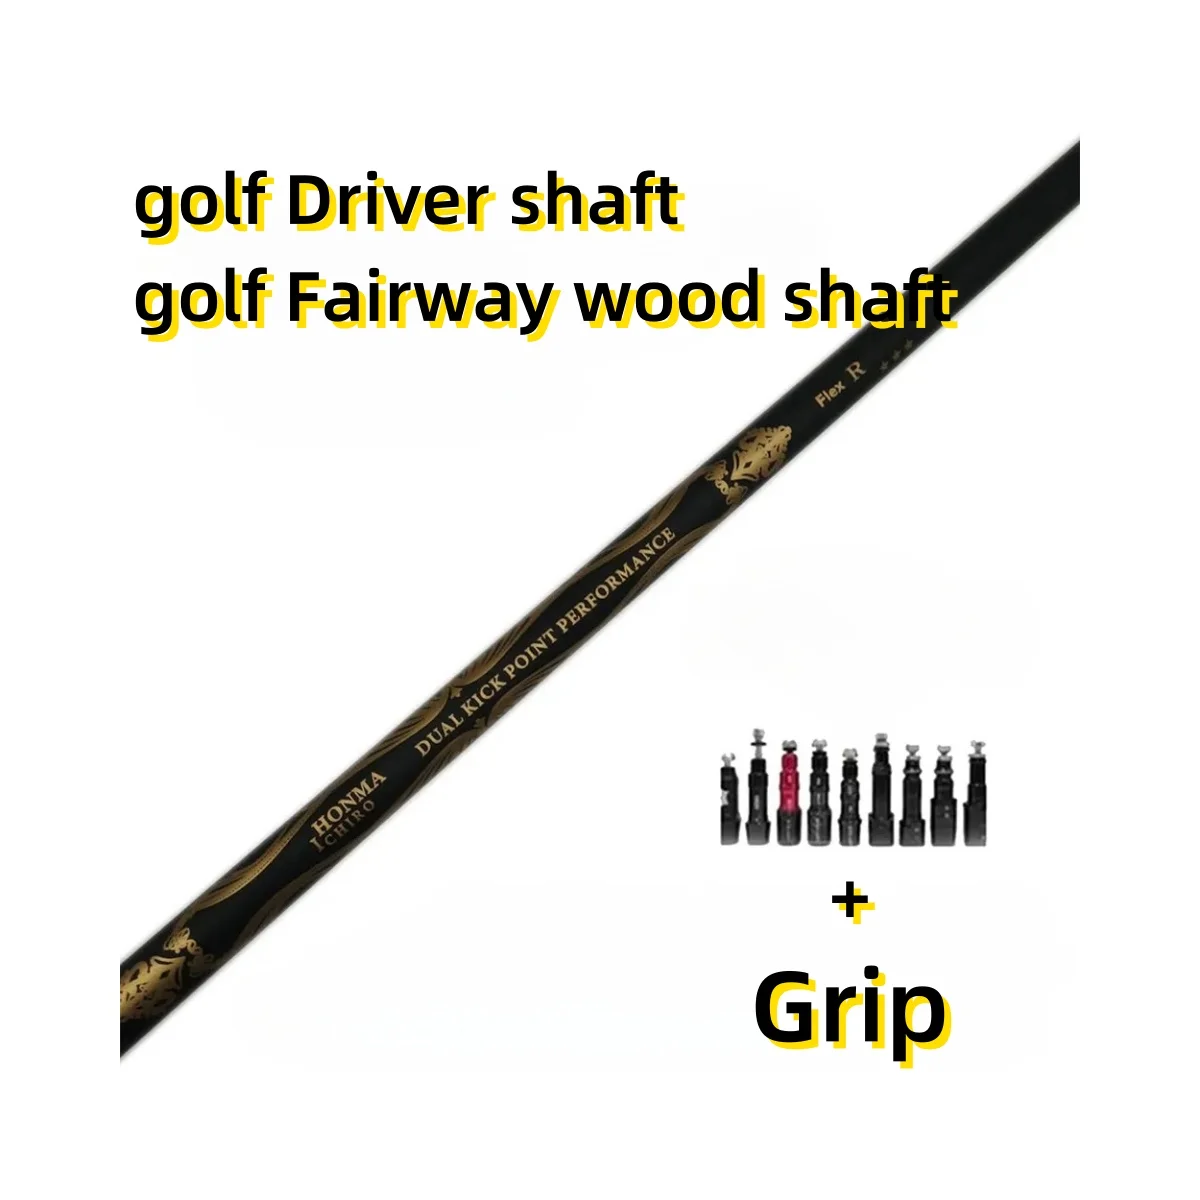 

Вал Клюшки для гольфа Ichiro черный вал S/SR/R гибкий графитовый Вал Драйвер и деревянные валы бесплатно сборный рукав и захват